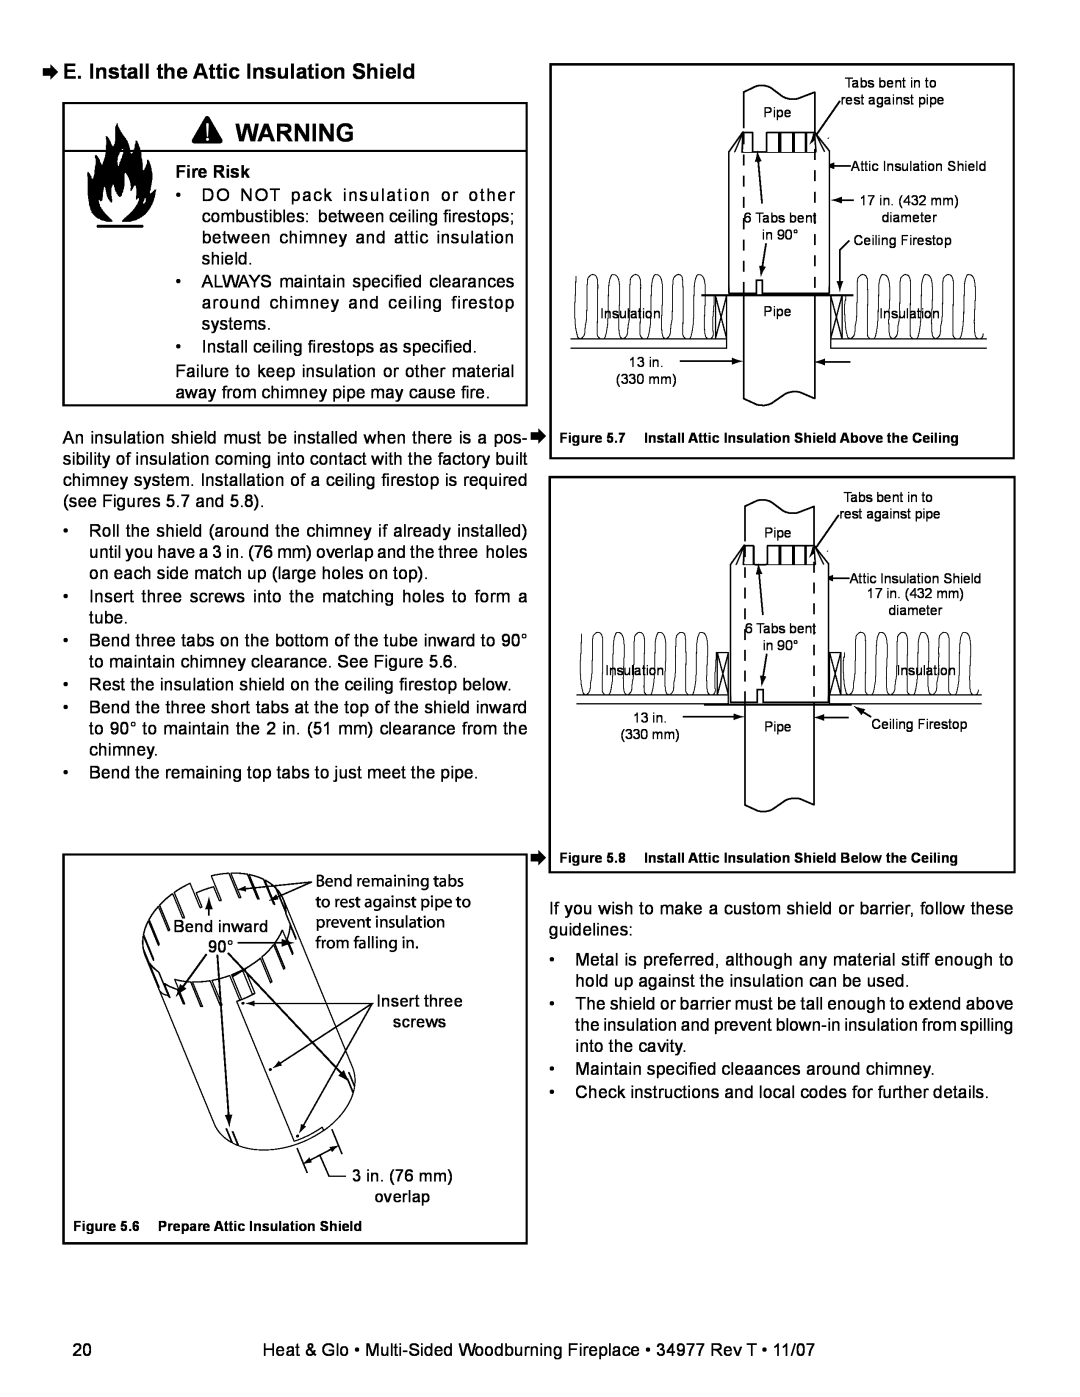 Heat & Glo LifeStyle BAY-40 ¨E. Install the Attic Insulation Shield, Fire Risk, 6 Prepare Attic Insulation Shield 